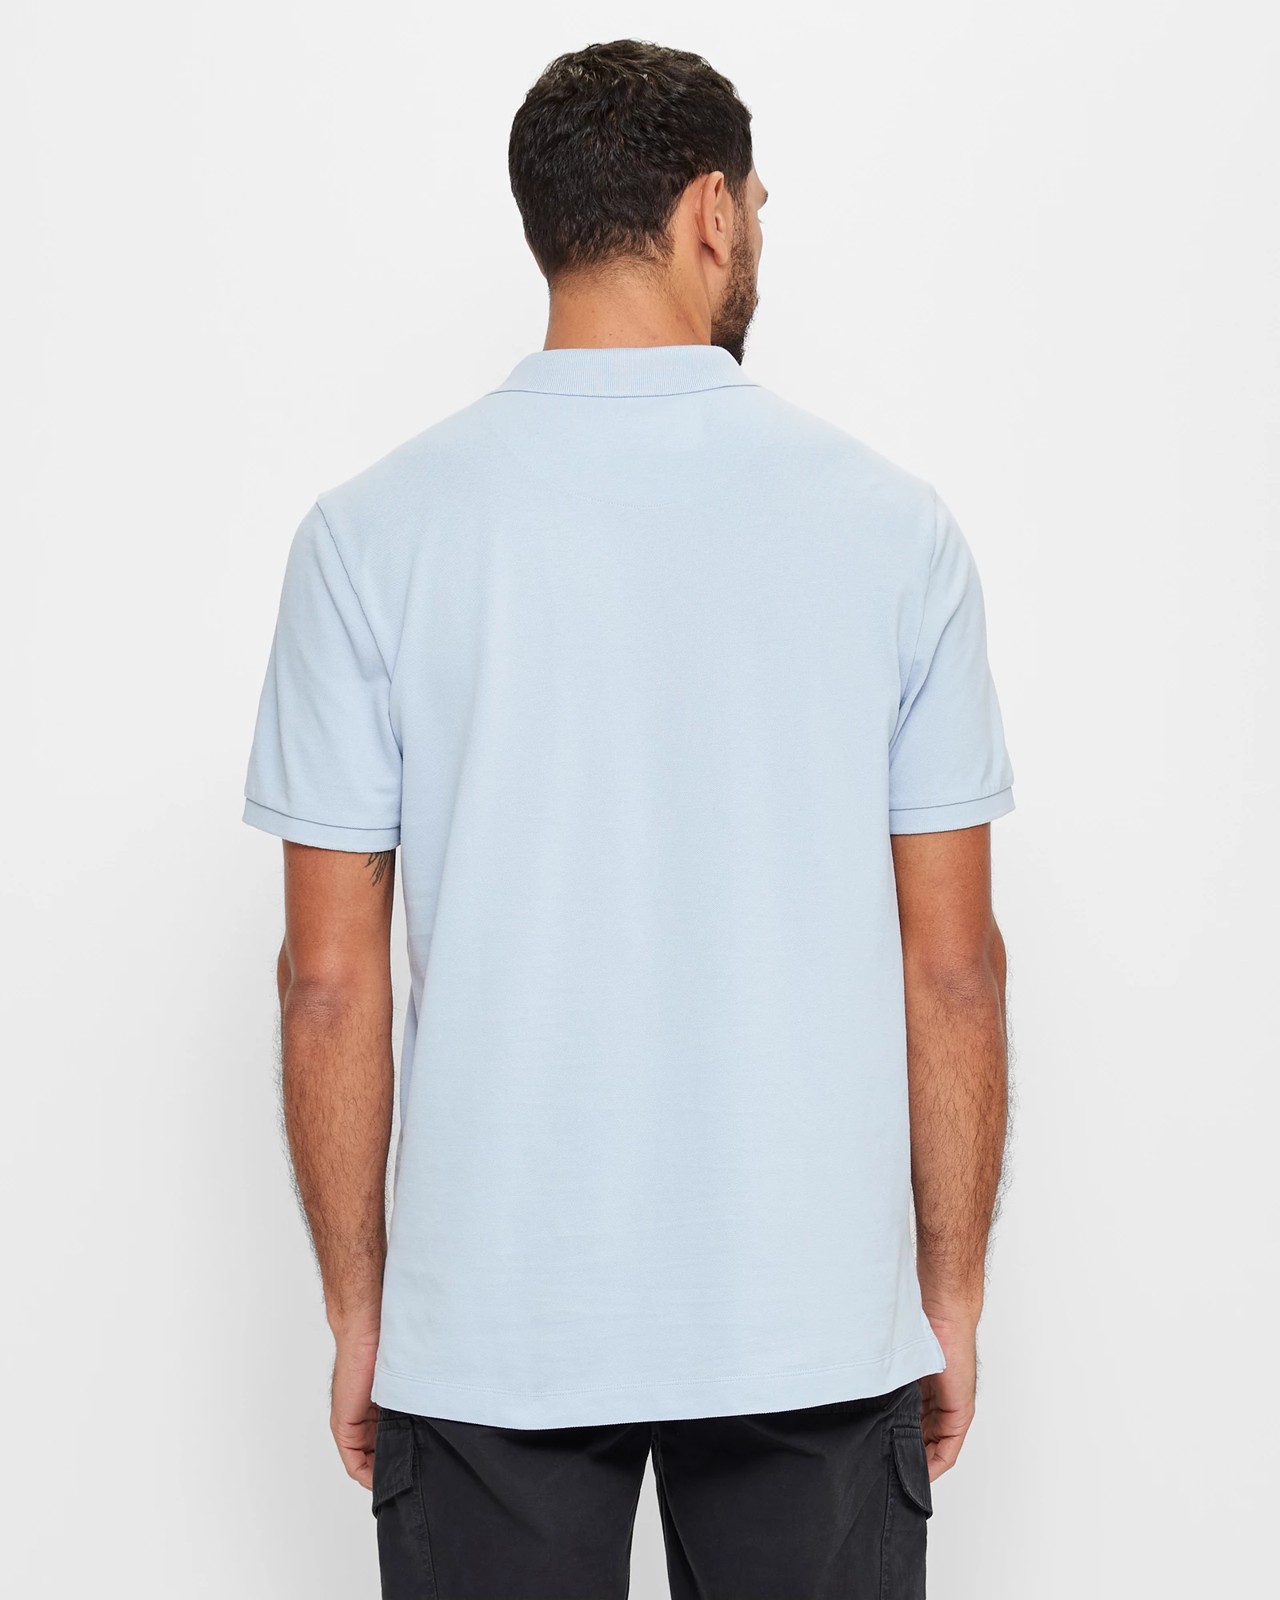 Pique Polo Shirt - Light Blue | Target Australia